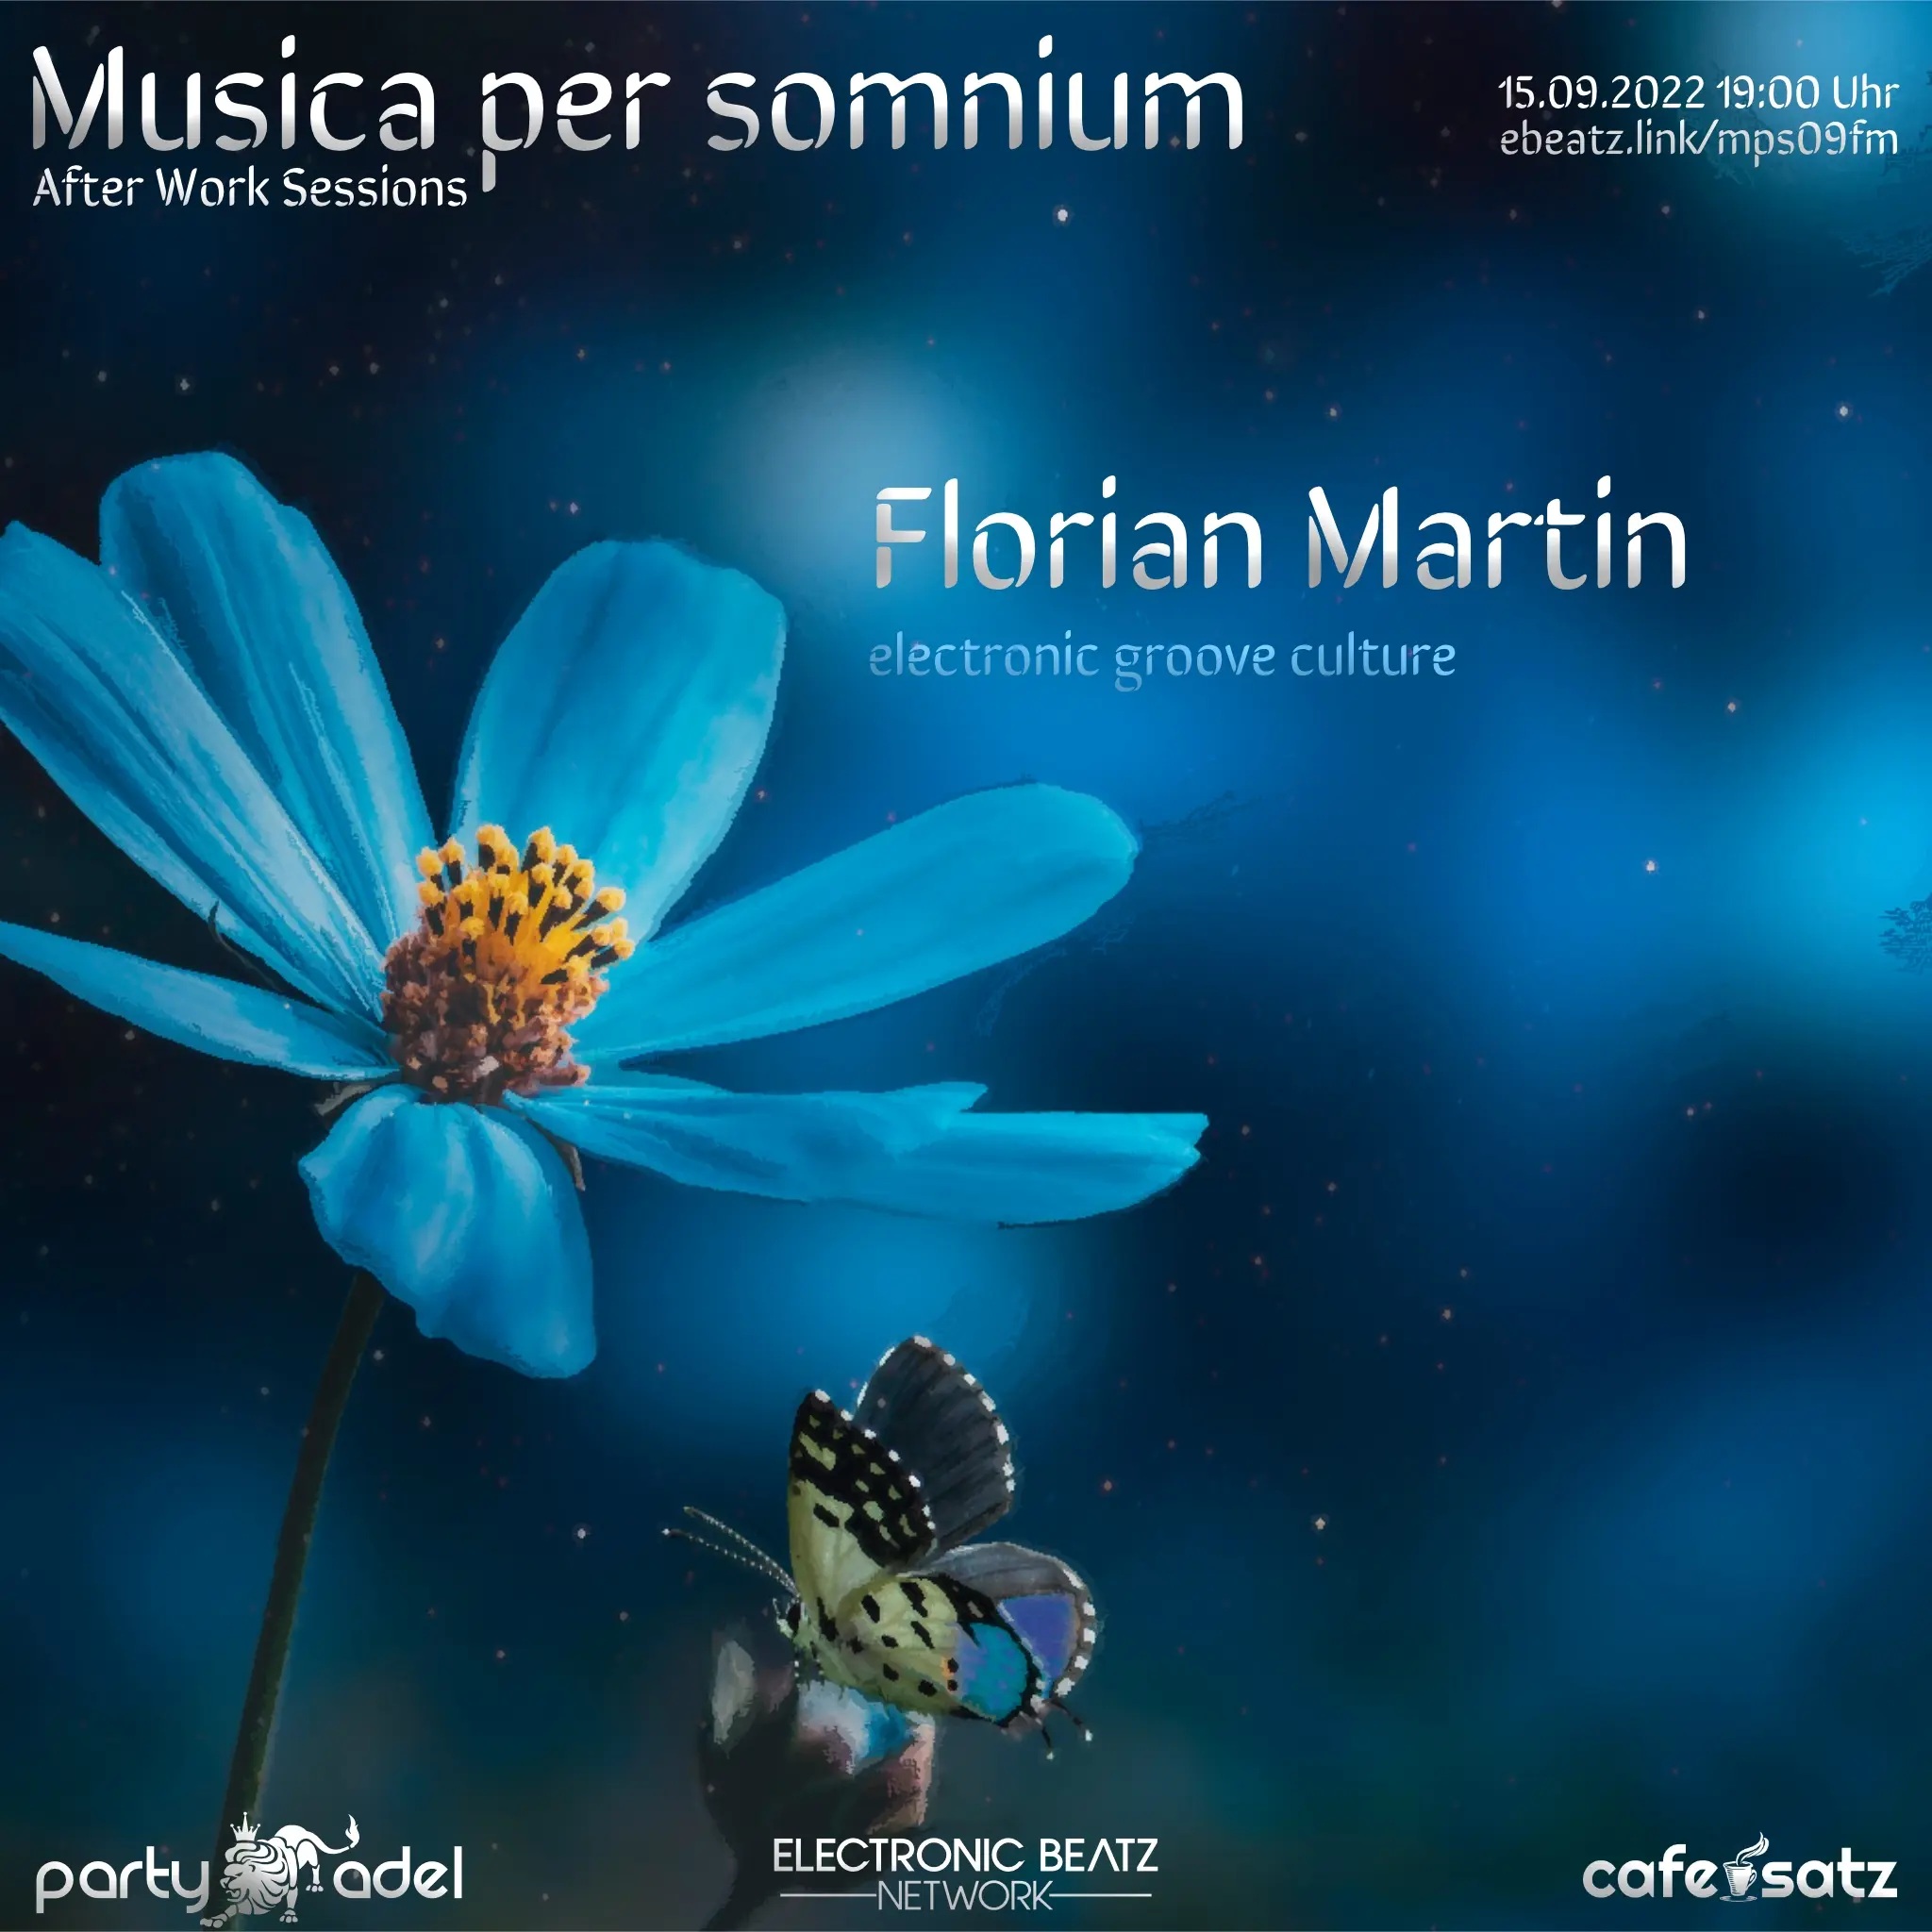 Florian Martin @ Musica per somnium (15.09.2022)